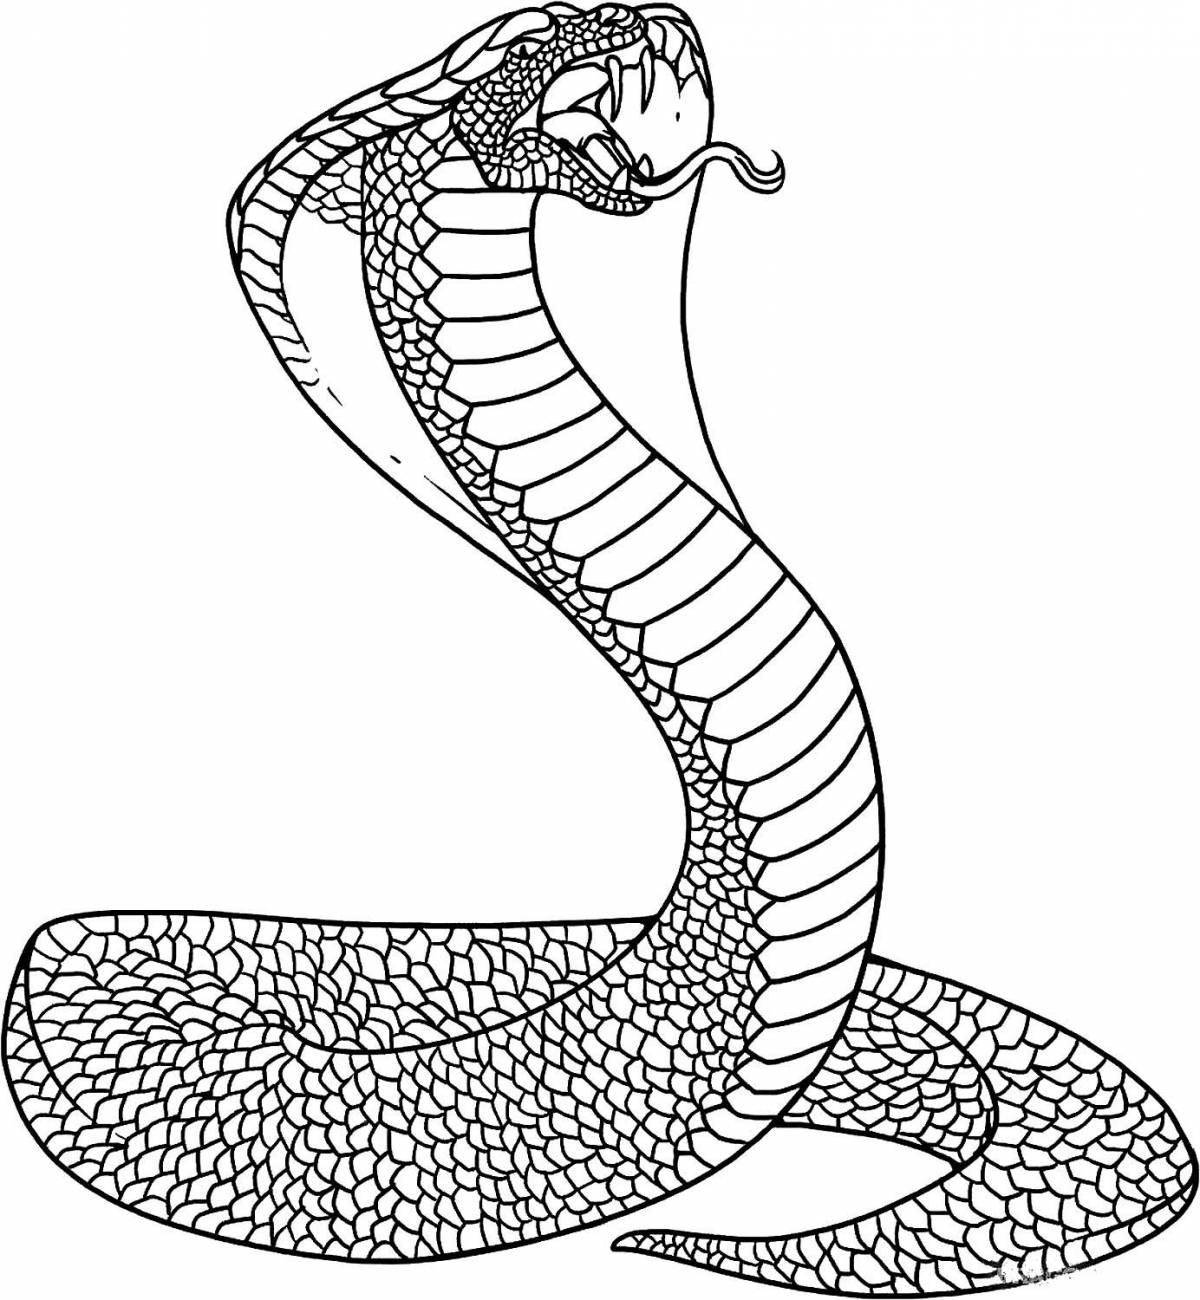 Королевская раскраска королевская кобра